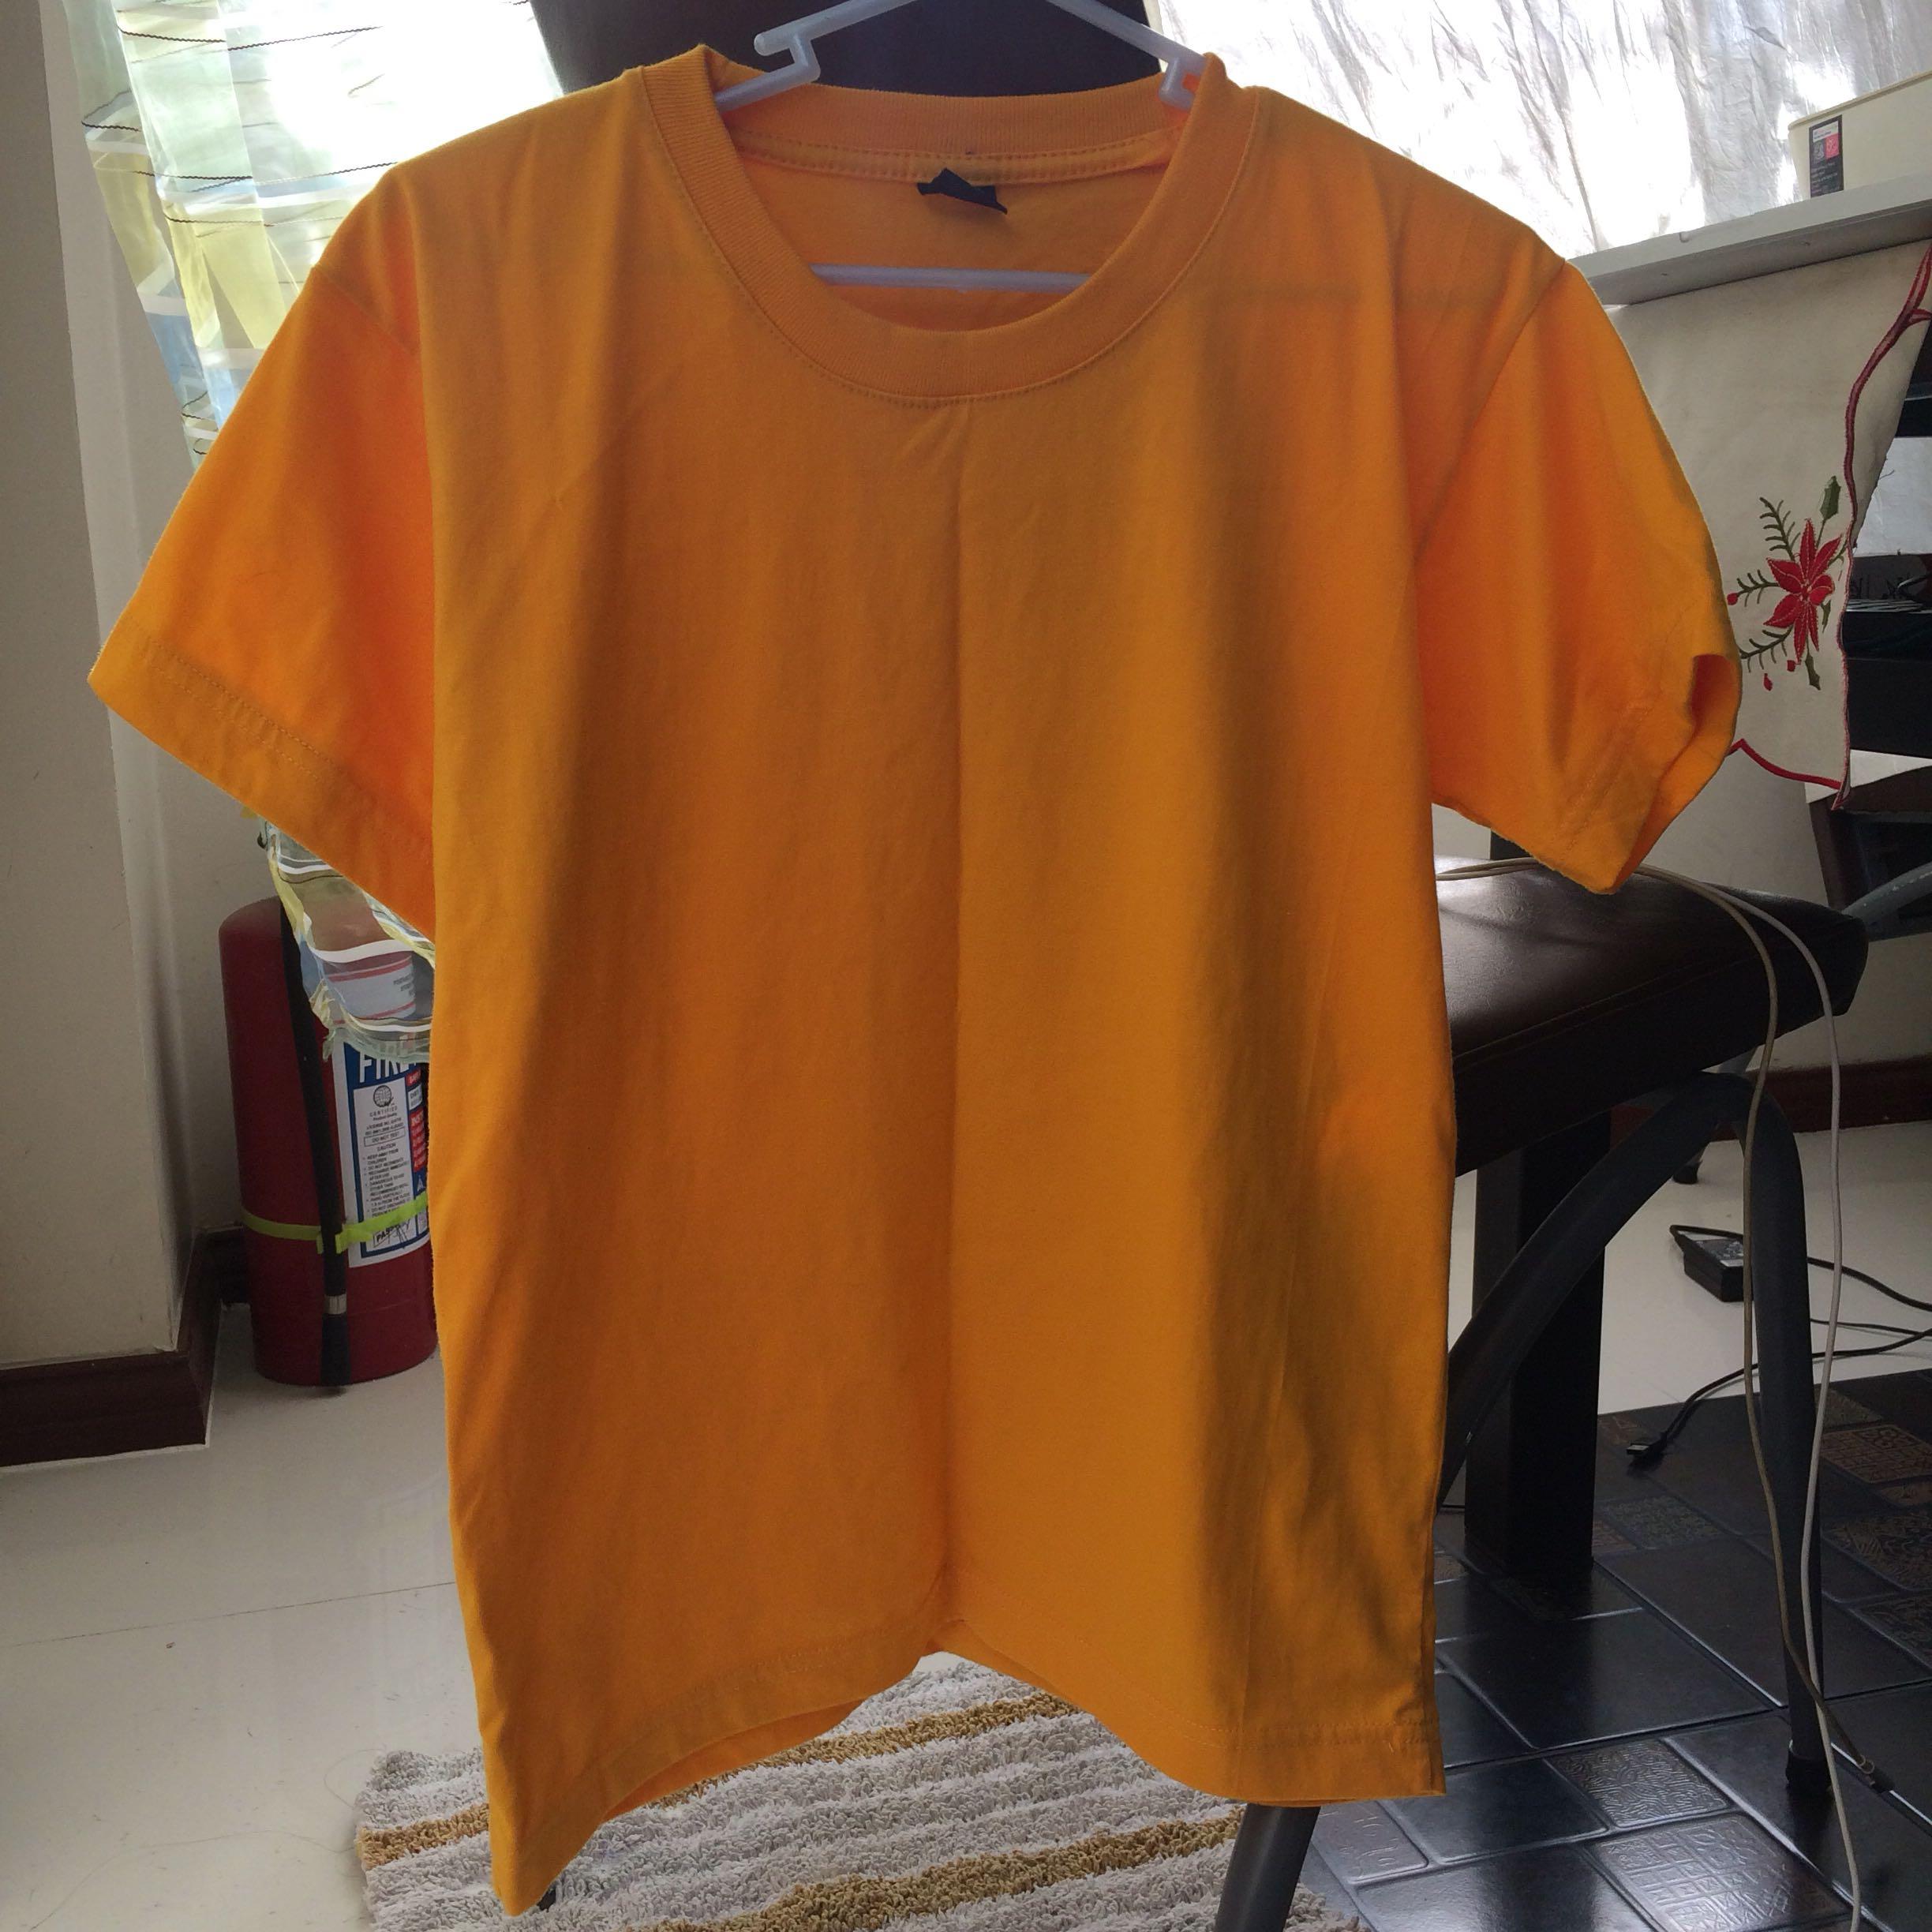 mustard yellow shirt plain